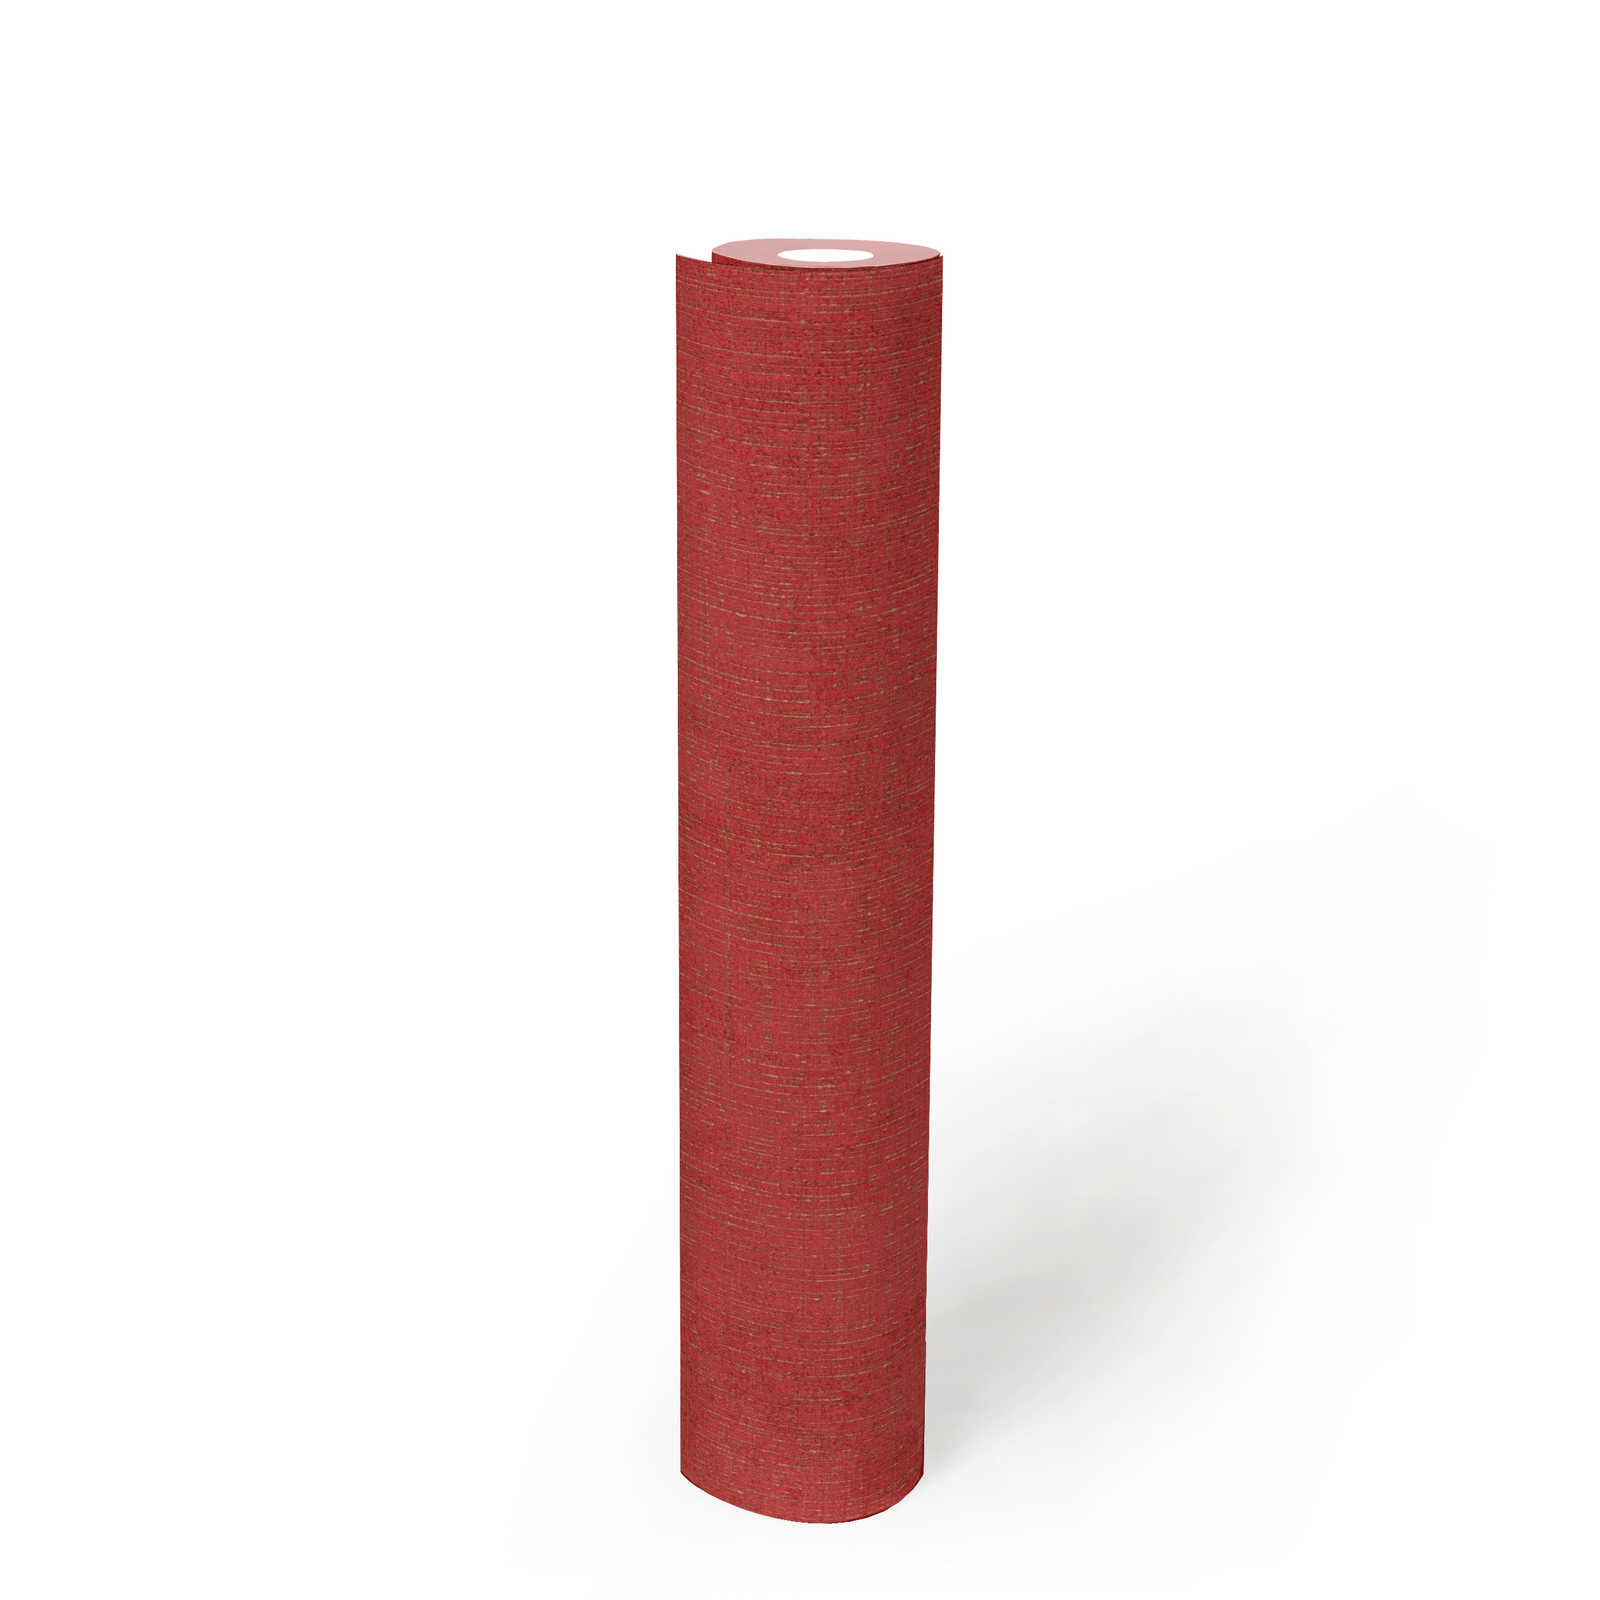             Papier peint rouge doré chiné avec aspect textile - métallique, rouge
        